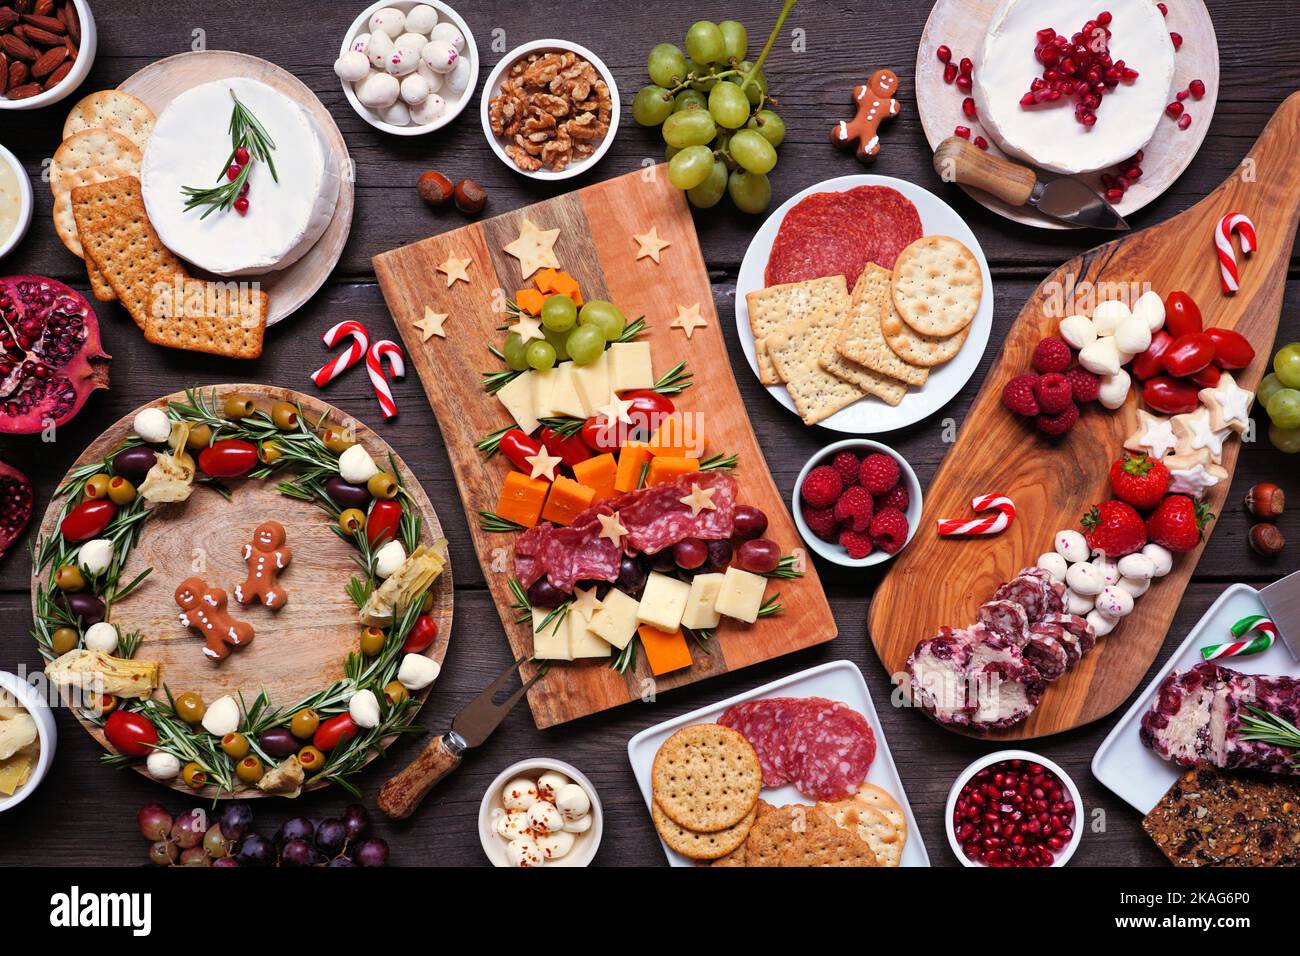 Weihnachtliche Tischszene mit Charcuterie vor dunklem Holzhintergrund. Auswahl an Käse- und Fleischgerichten. Weihnachtsbaum, Kranz und Zuckerrohr arra Stockfoto